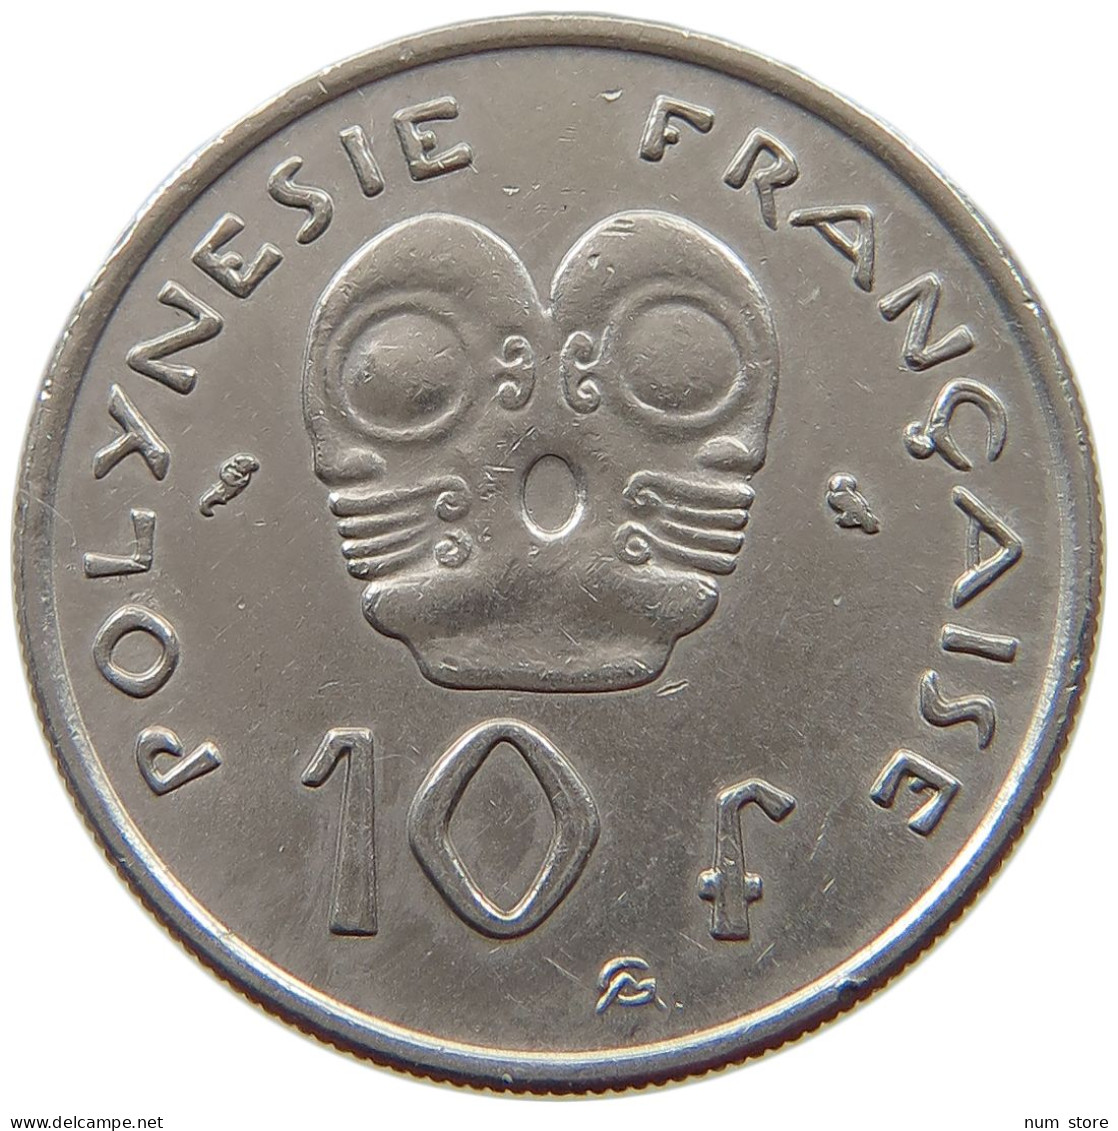 POLYNESIA 10 FRANCS 1973  #a015 0683 - French Polynesia